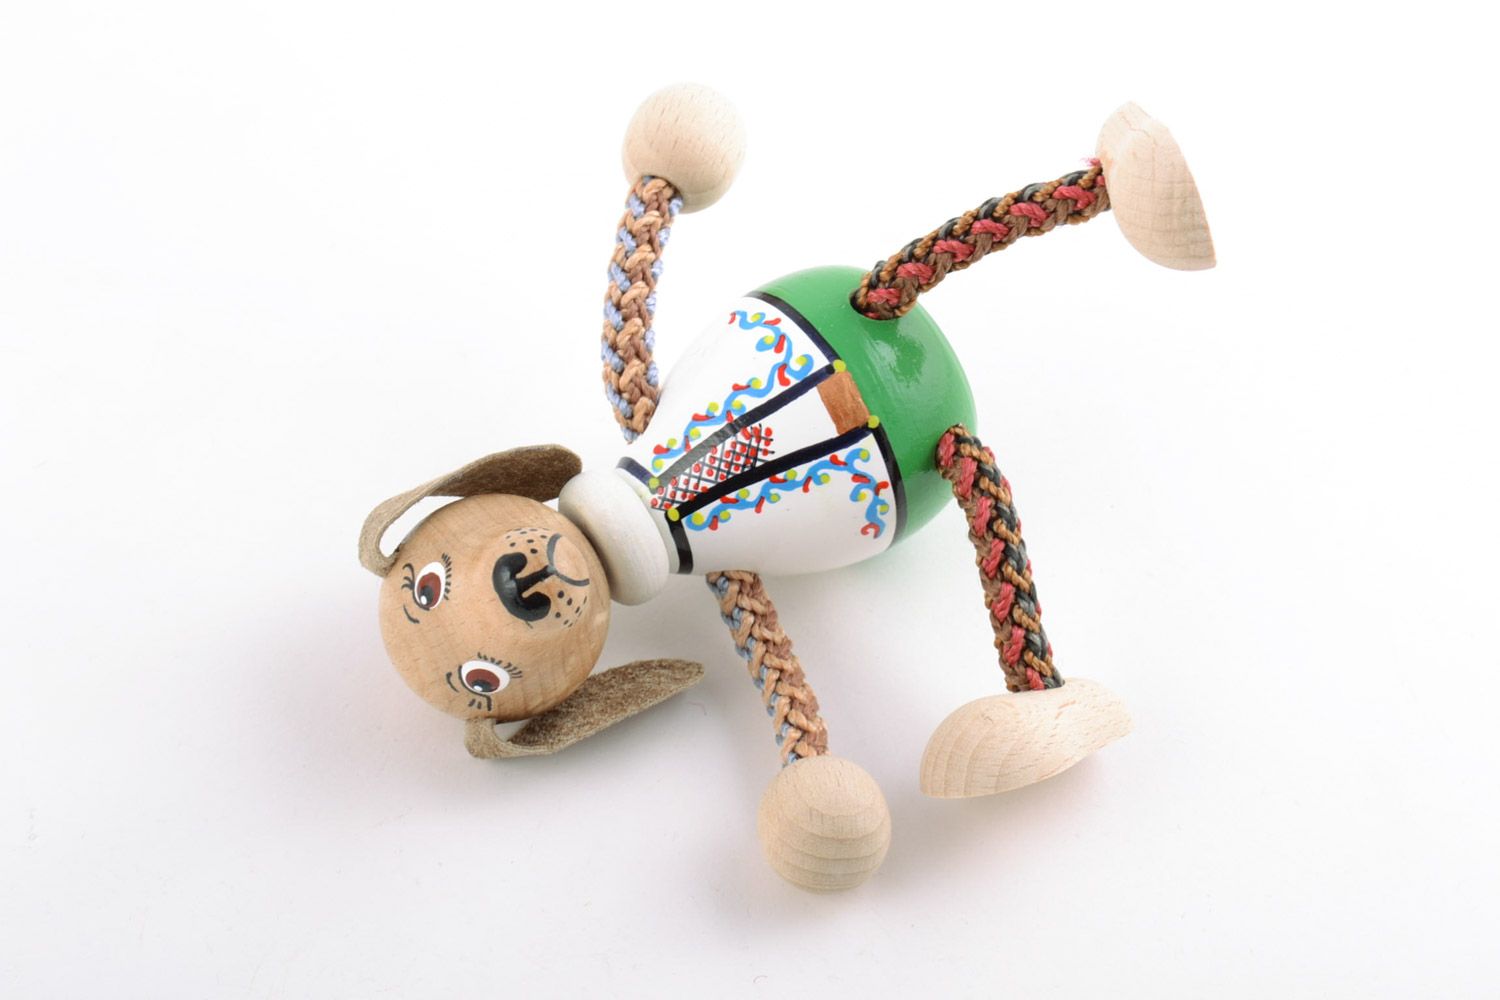 Öko Holz Spielzeug Hund grell schön Handarbeit Geschenk für Kinder foto 5